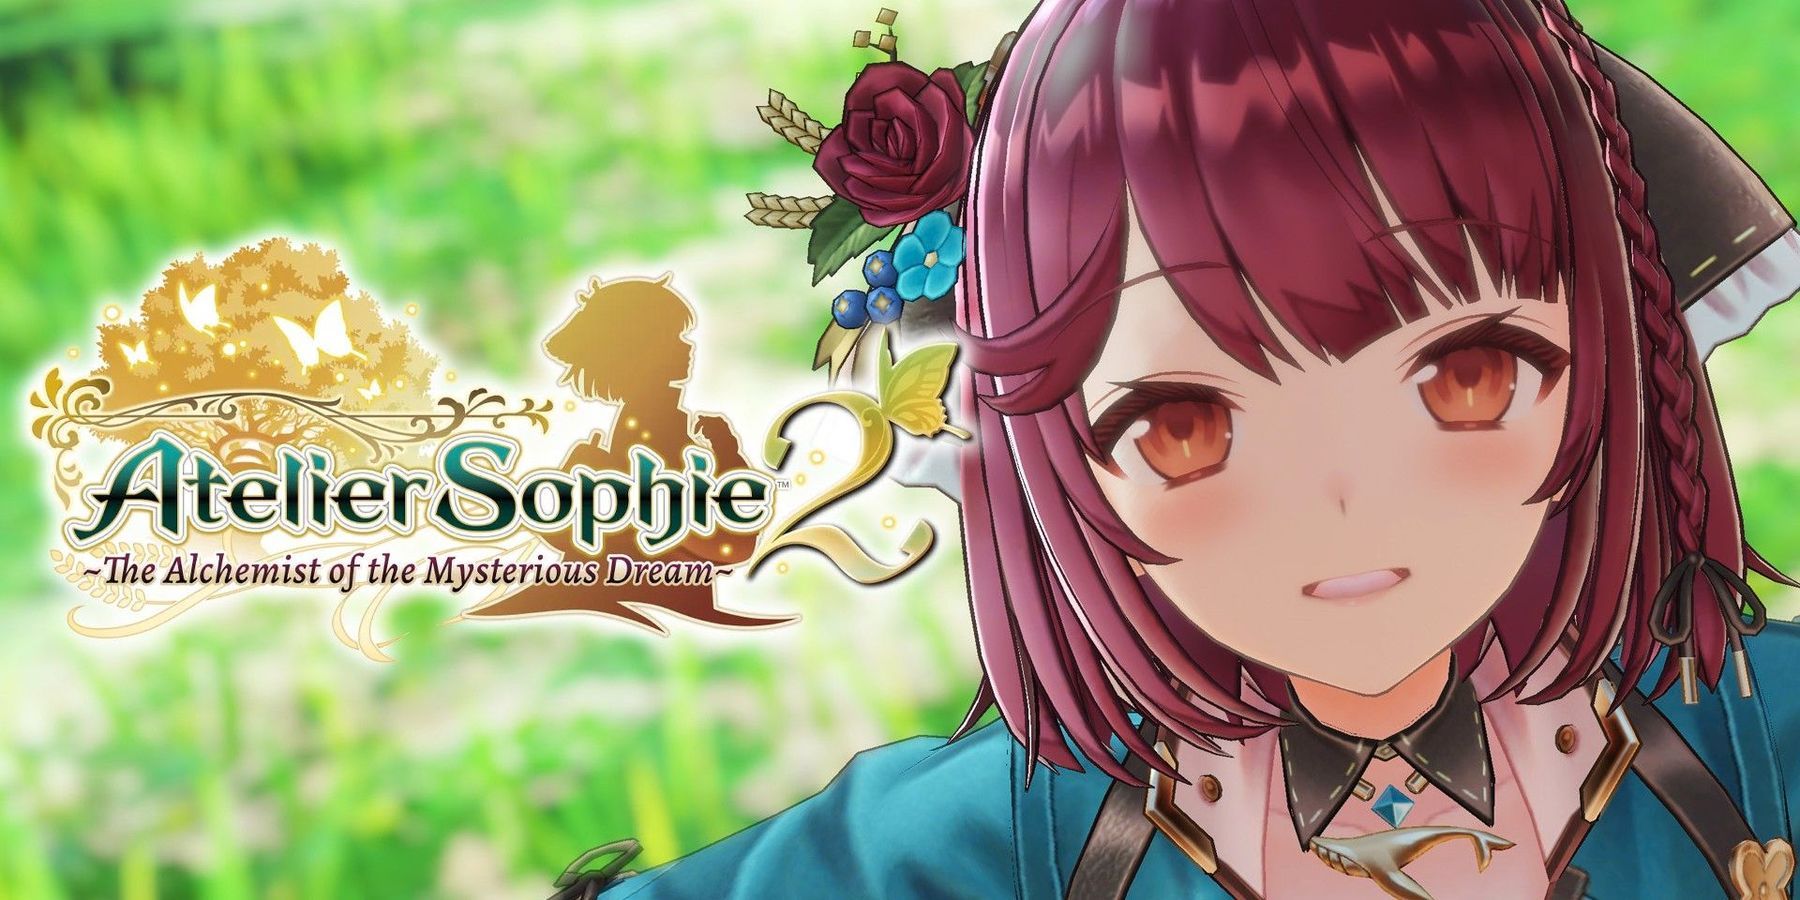 Atelier Sophie 2 anunciado oficialmente por Koei Tecmo con el lanzamiento de febrero de 2022